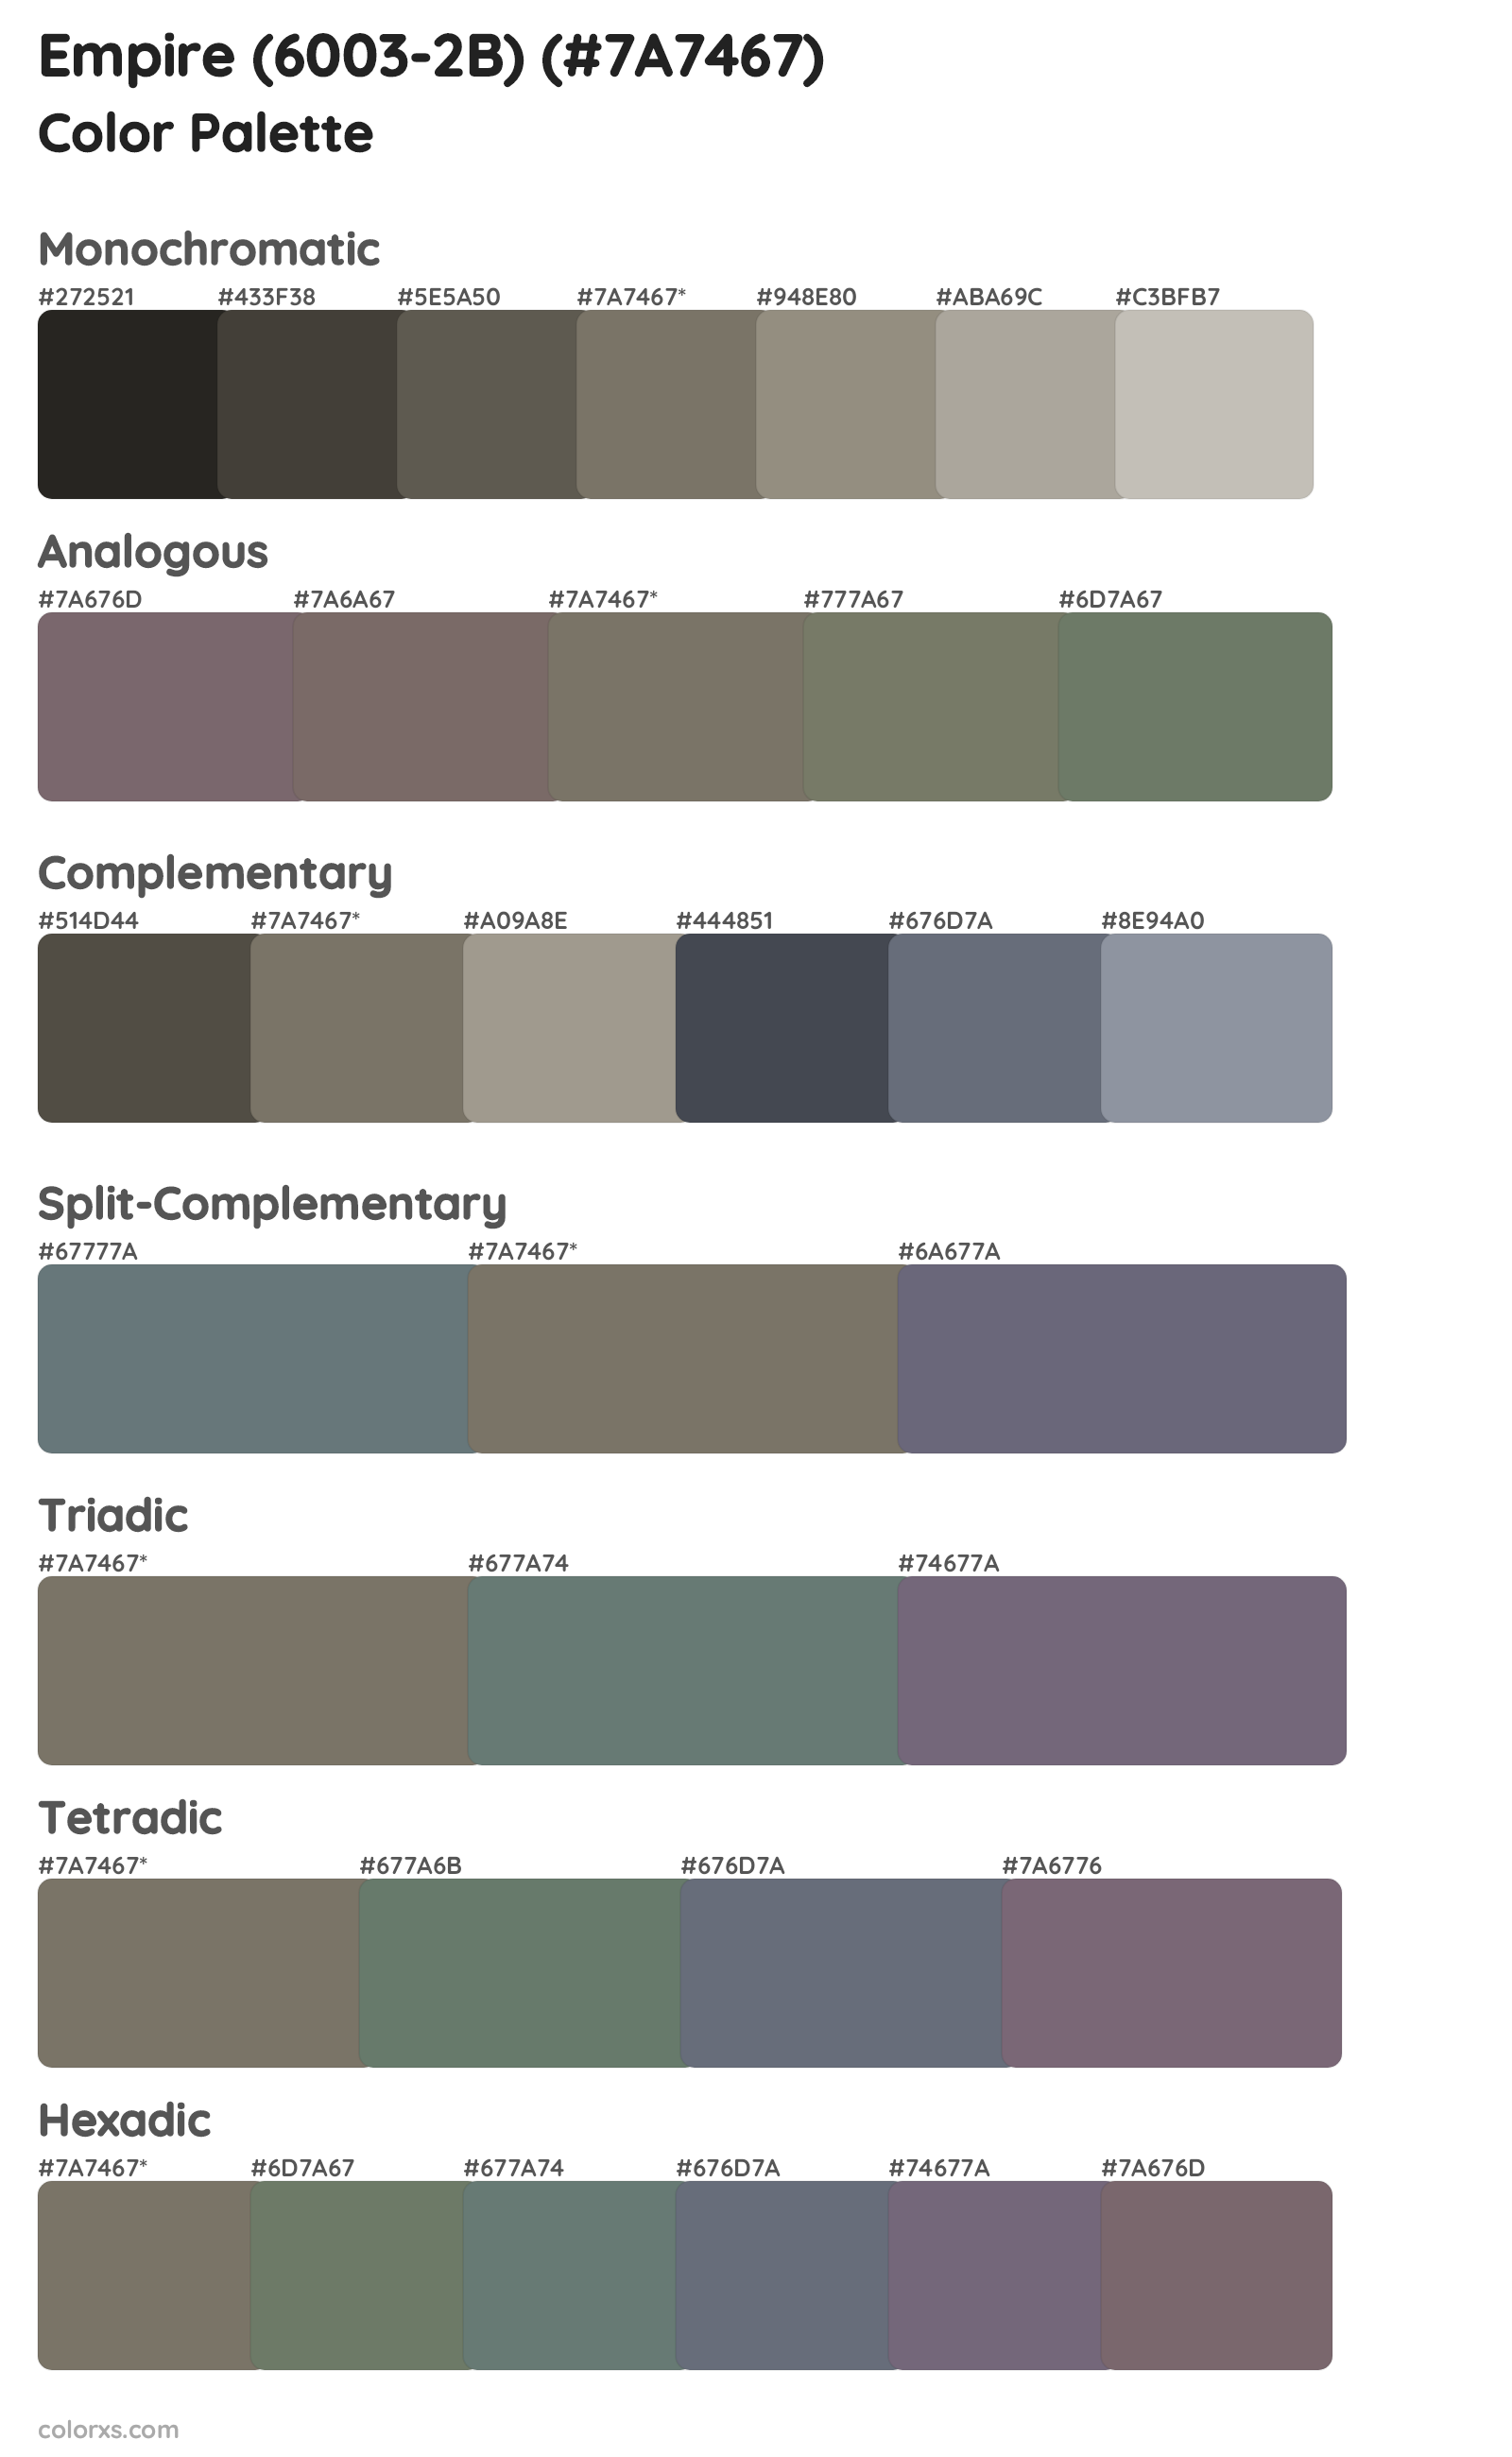 Empire (6003-2B) Color Scheme Palettes